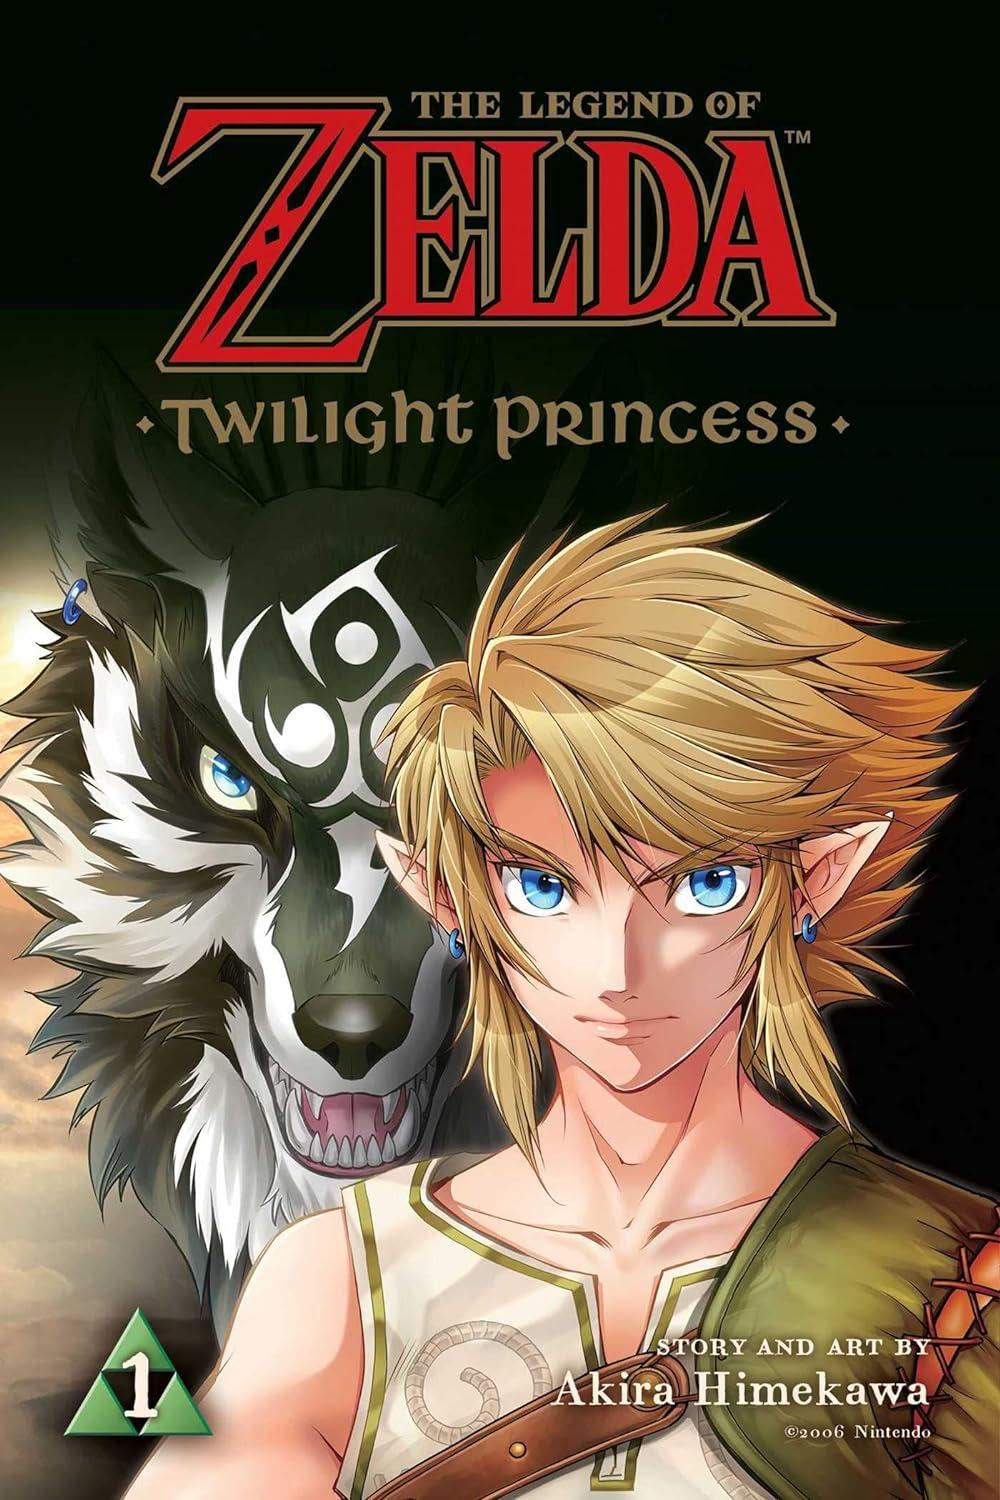 Das erste Buch der Graphic Novel-Reihe „Twilight Princess“.